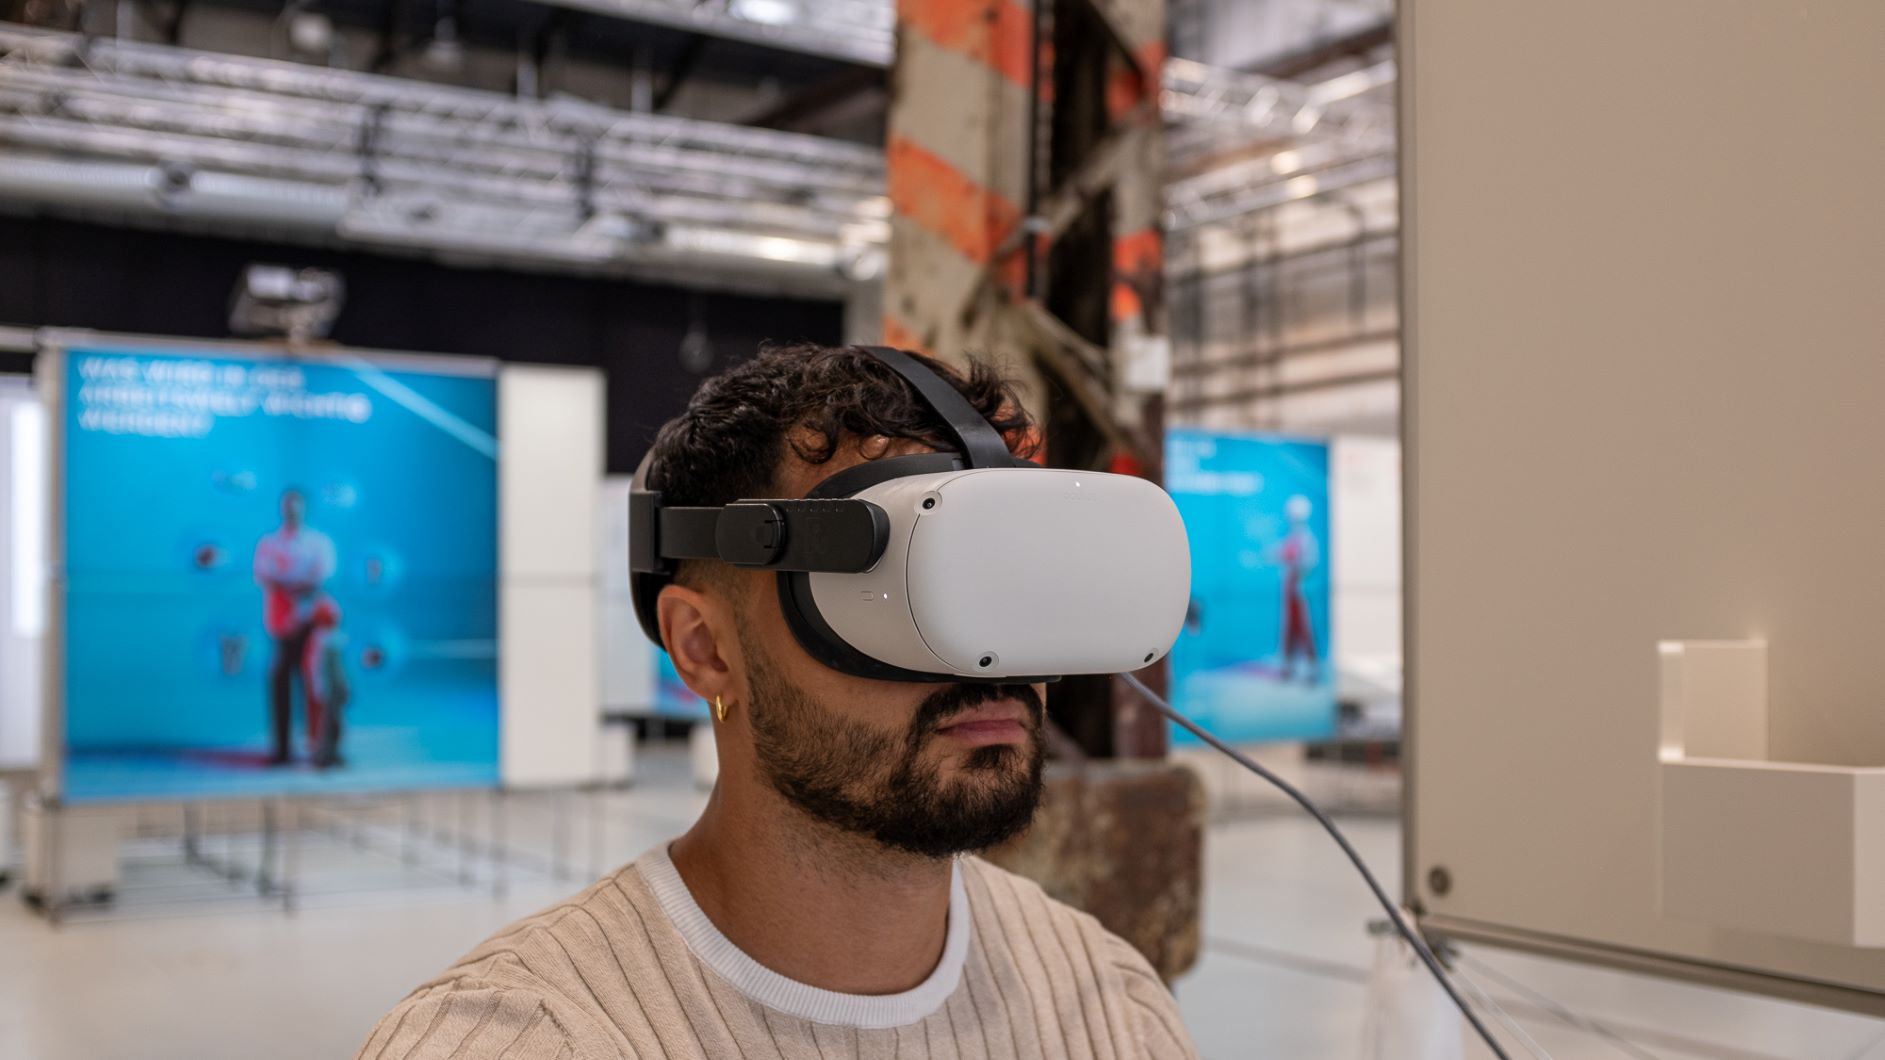 Mann mit VR Brille in der Wanderausstellung "Arbeit im Wandel"